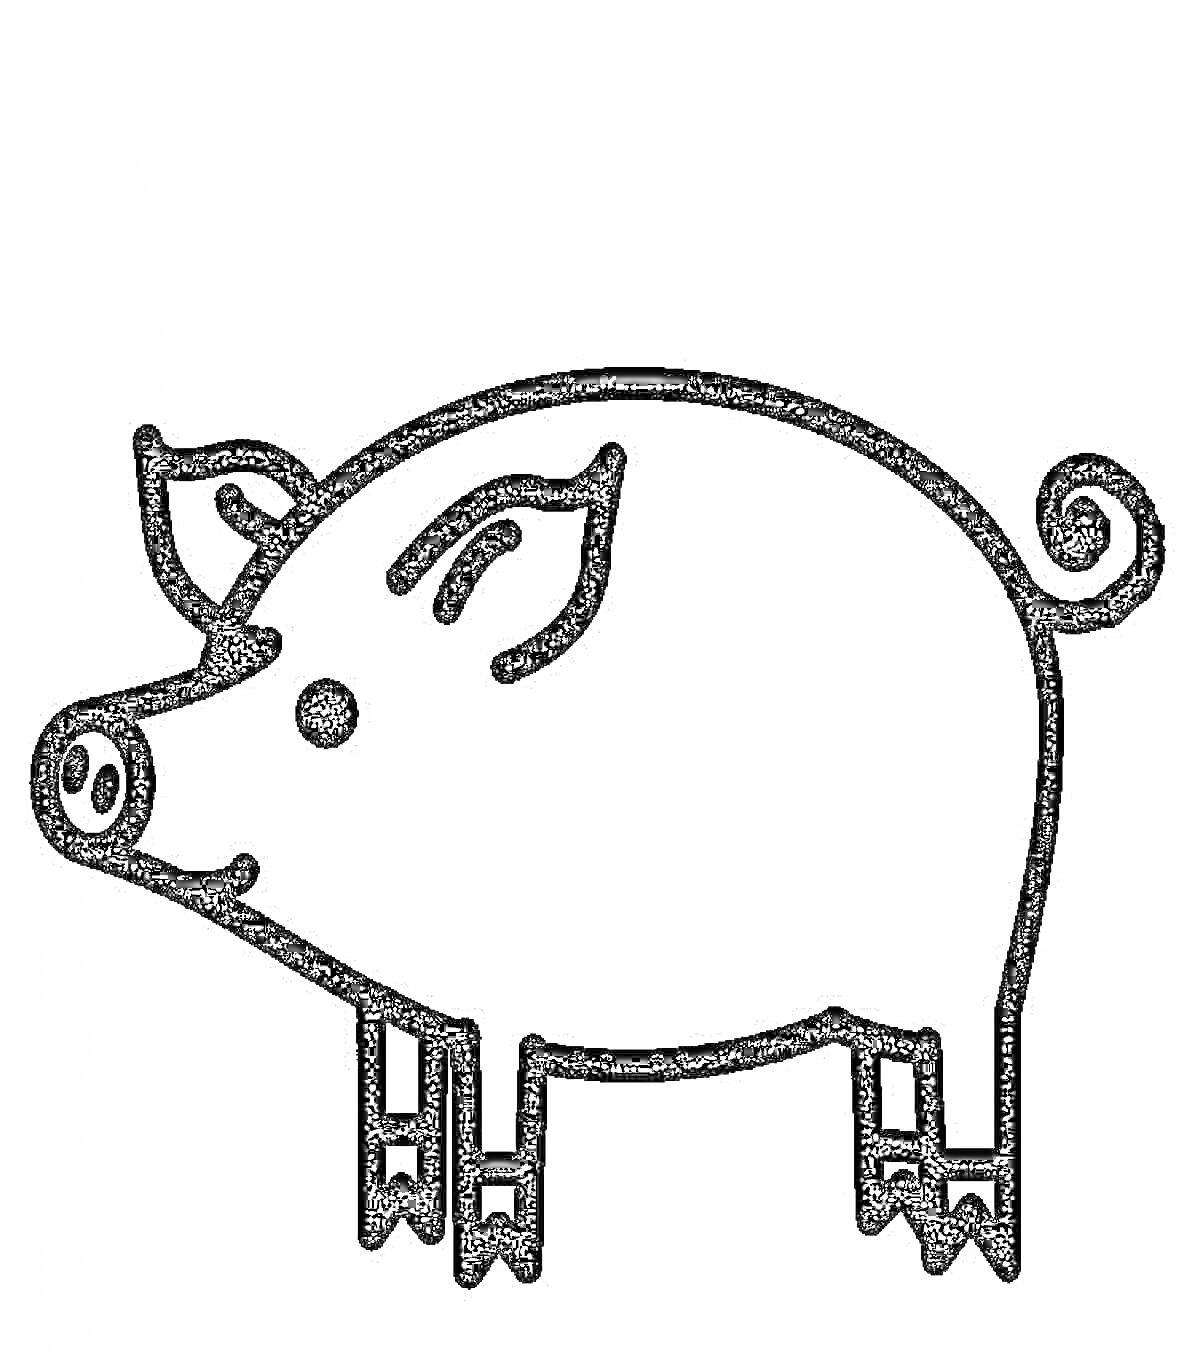 Свинья с завитым хвостиком на четырех копытах